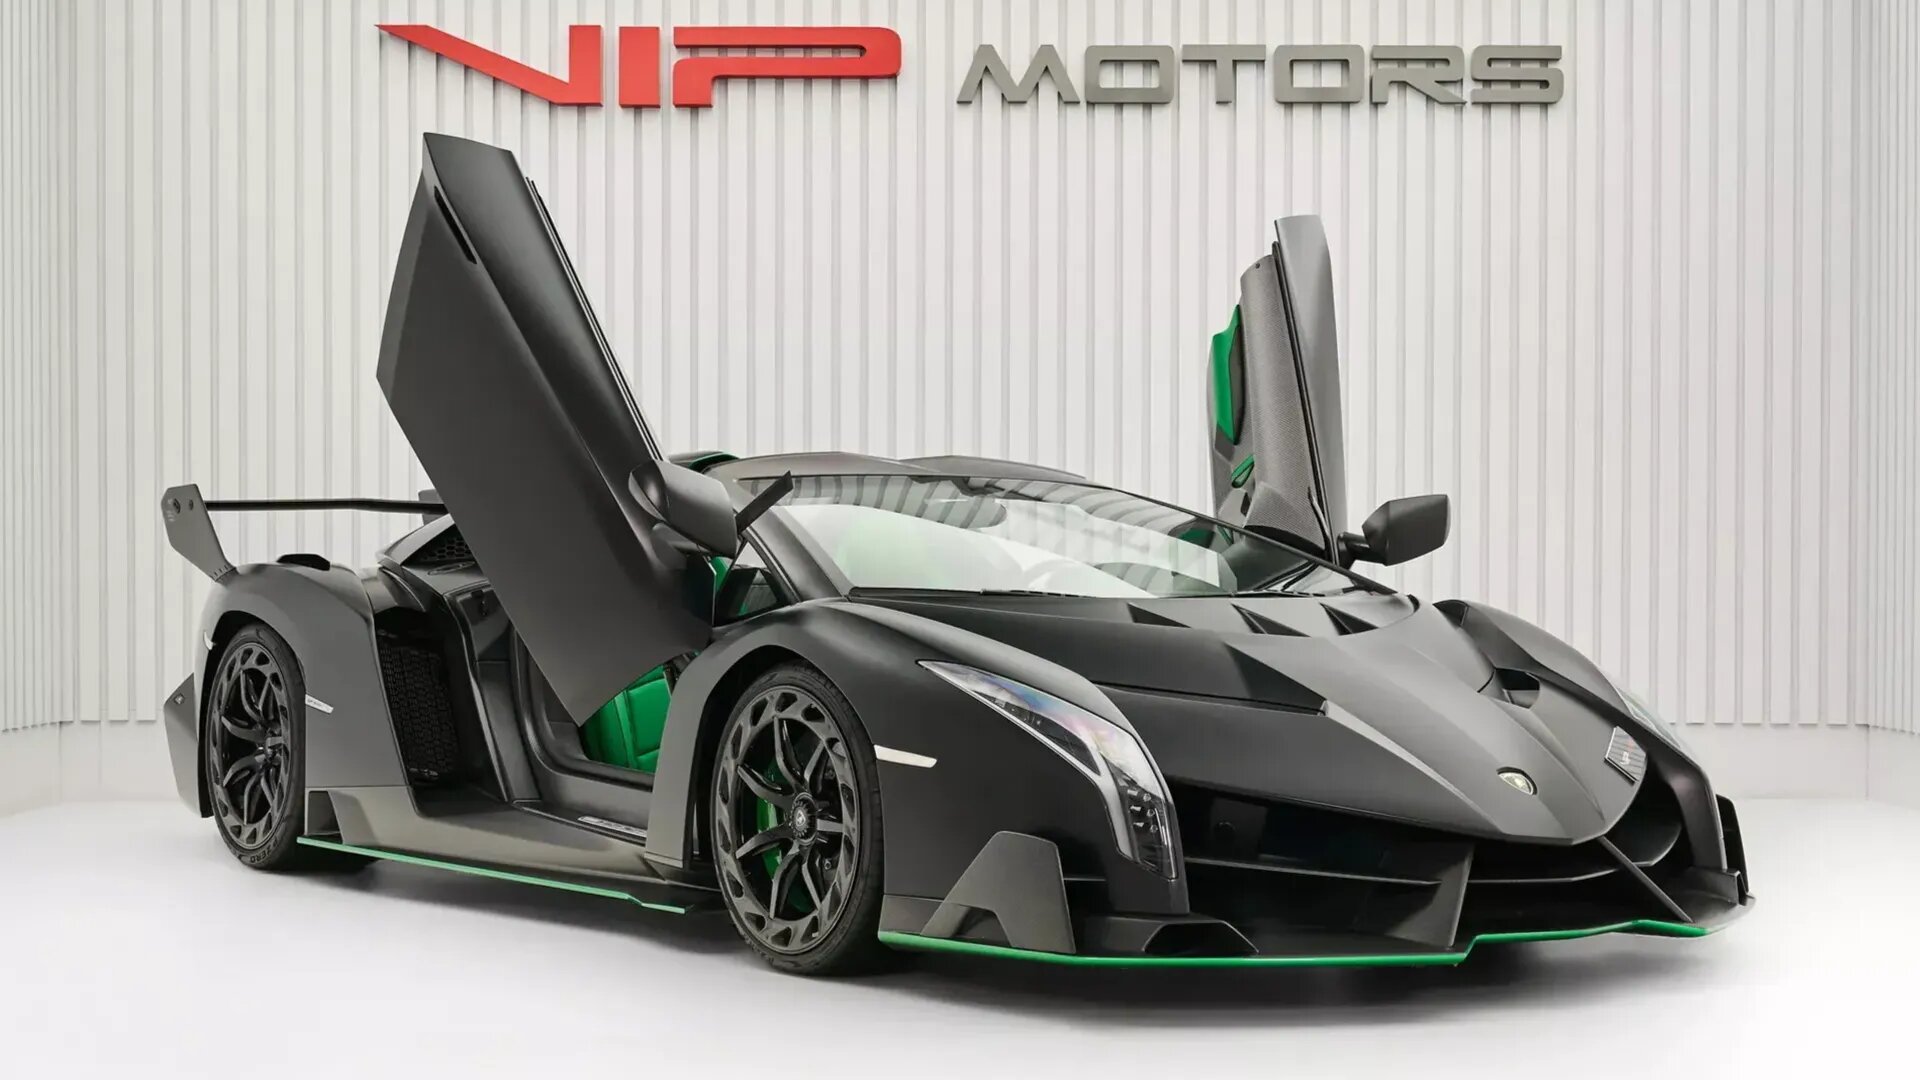 Редчайший суперкар Lamborghini Veneno продают за 9,5 миллиона долларов